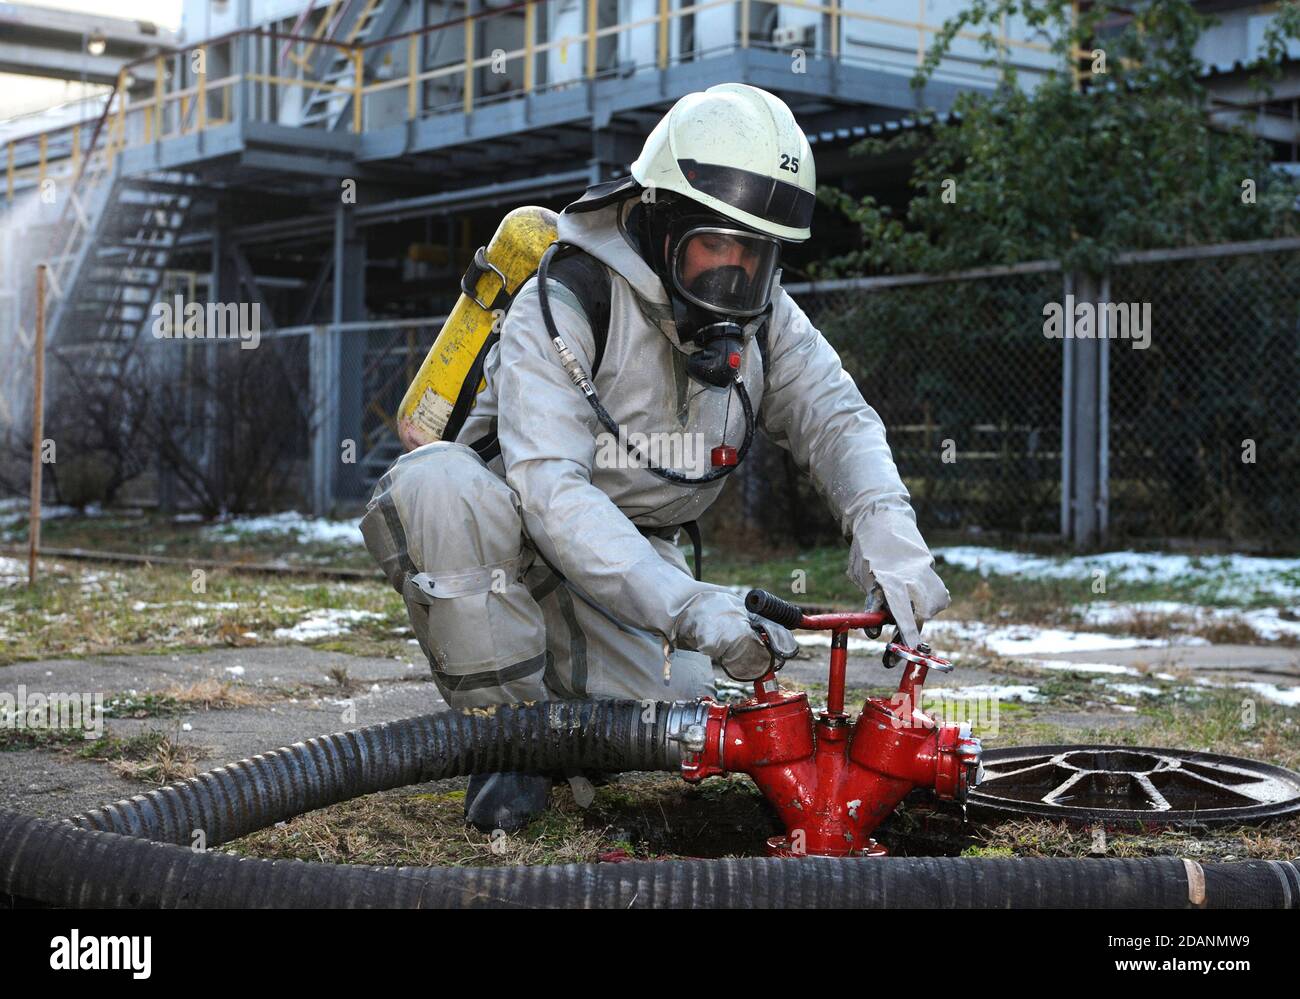 Formazione del team di soccorso sulla decontaminazione chimica: Soccorritore in un gruppo protettivo che gira una valvola di un idrante antincendio Foto Stock